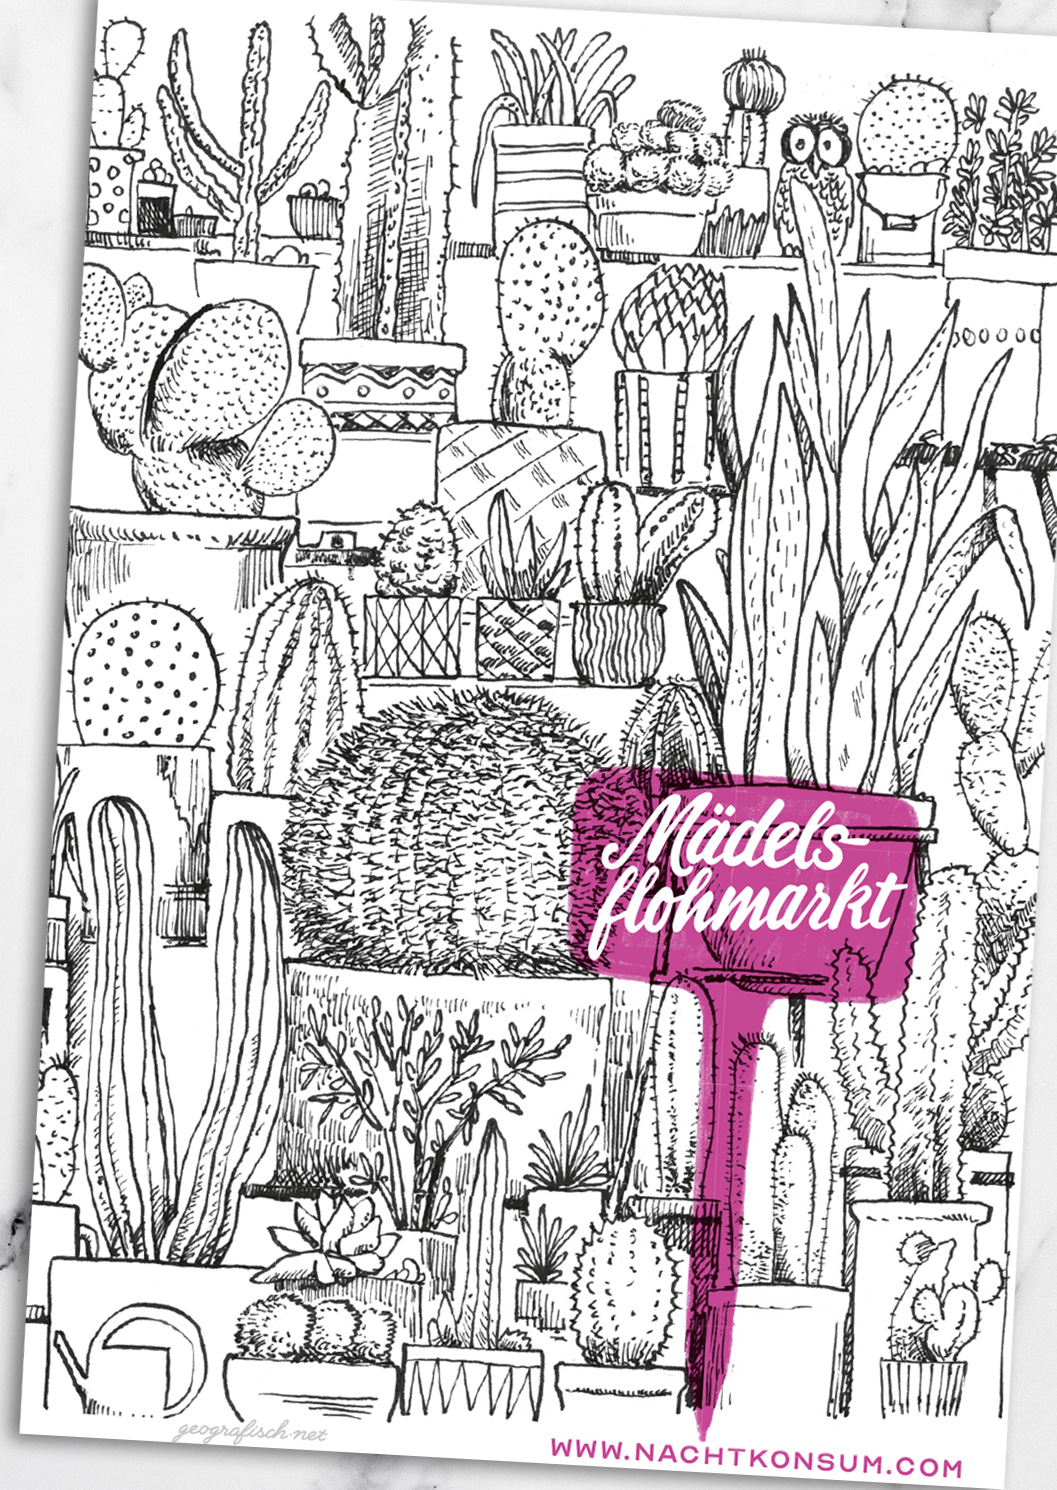 illustration, cactus, folder spread, mädelsflohmarkt, girls fleamarket, 0049events, düsseldorf, münchen